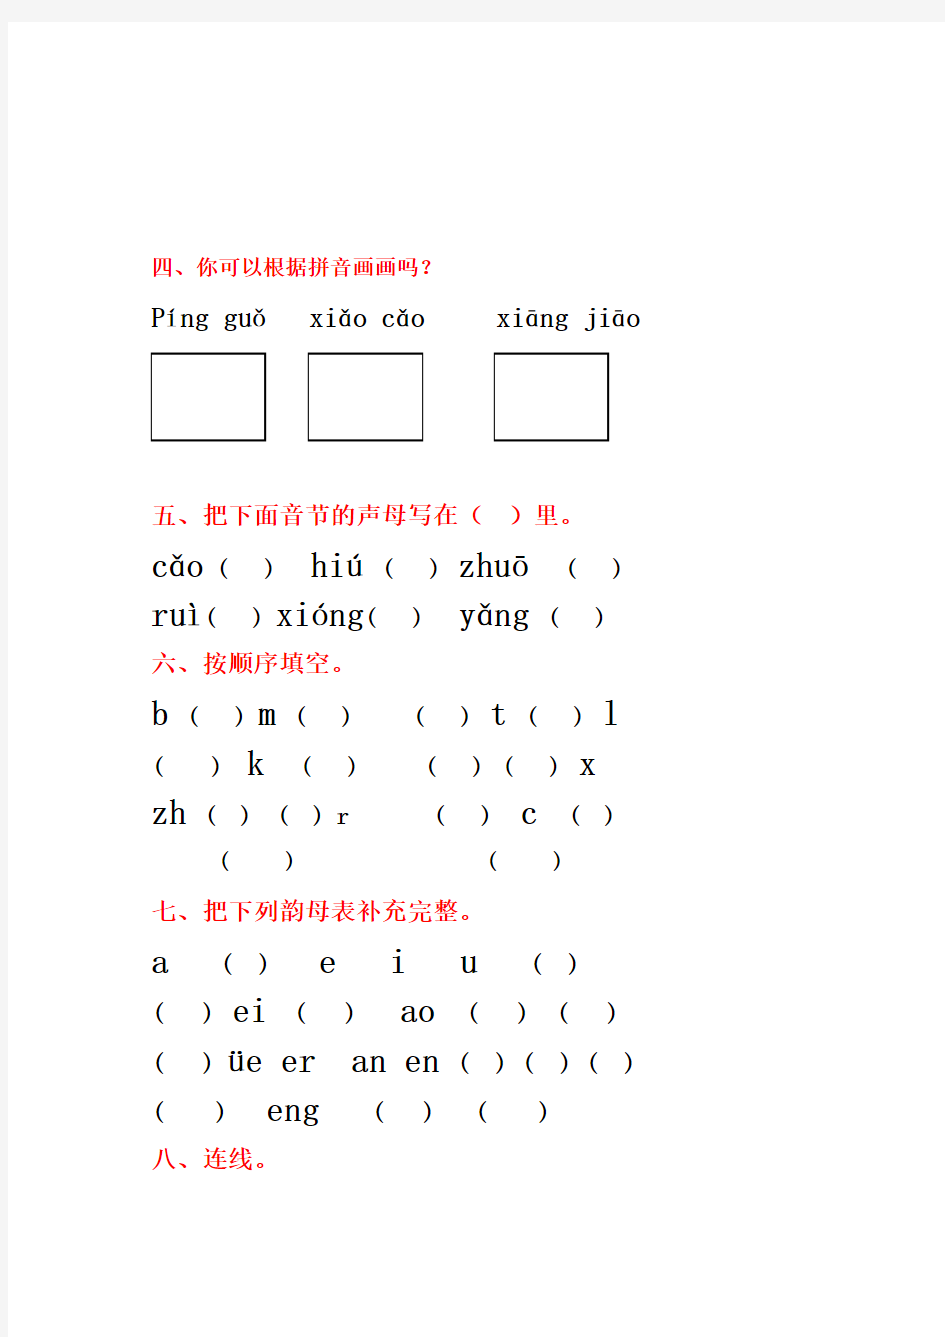 小学一年级汉语拼音基础练习题(合集)(免费下载)